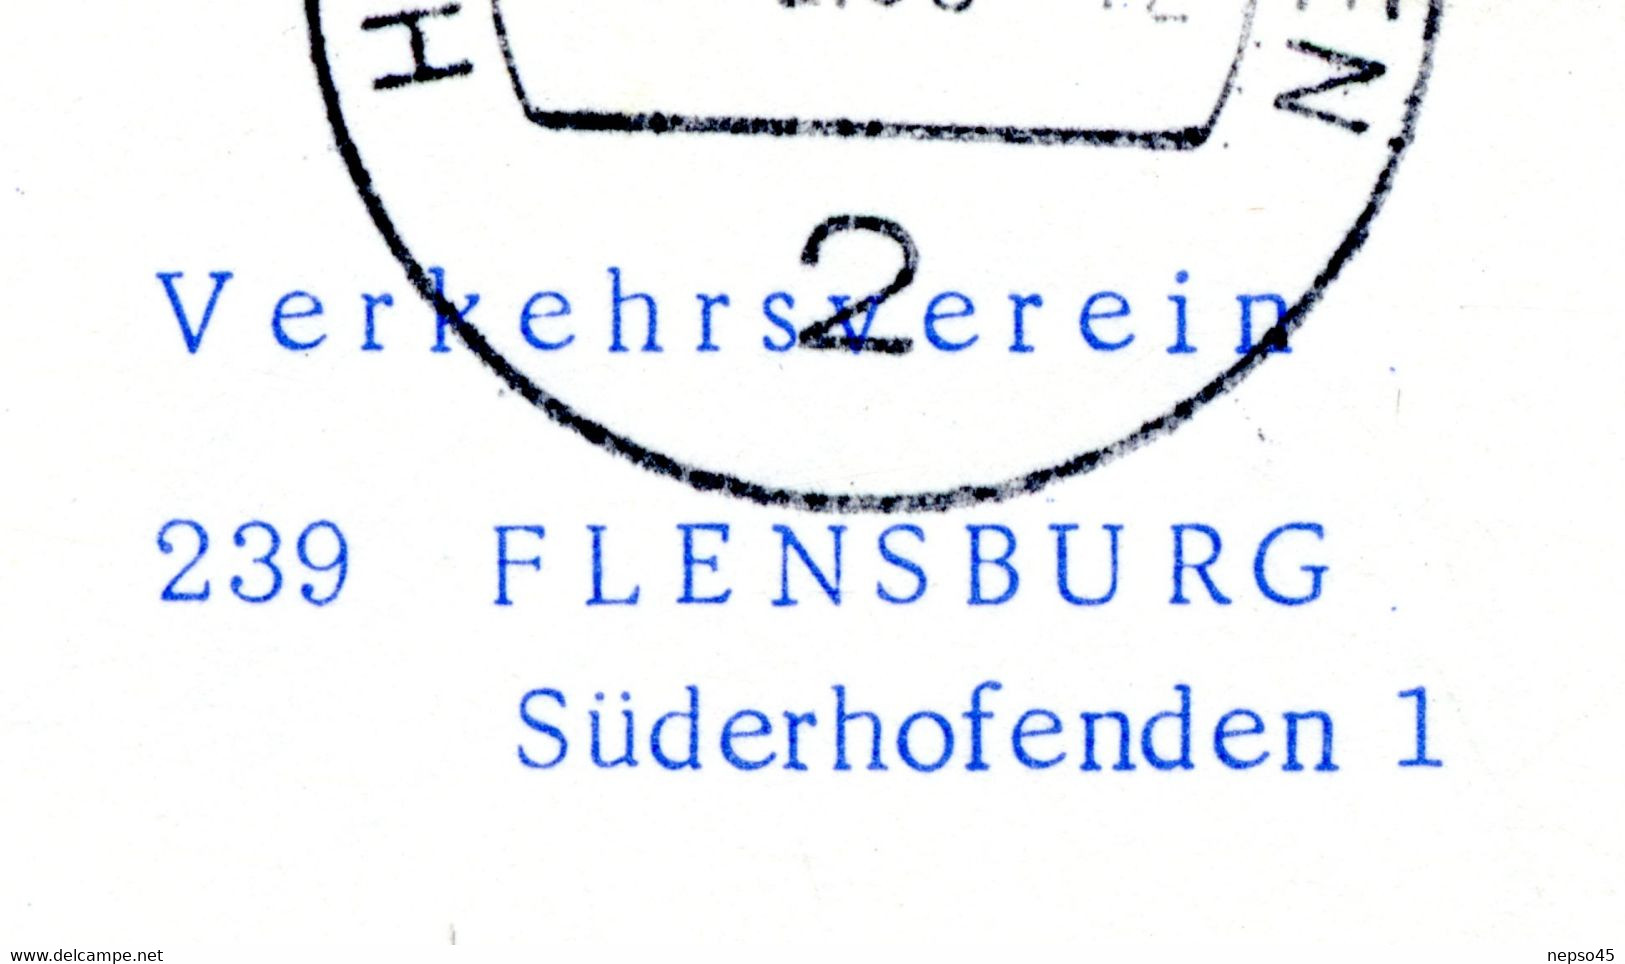 Baptême Du Boeing 737 D-ABED " Flensburg " 16 Février 1968.Lufthansa. - Articles De Papeterie